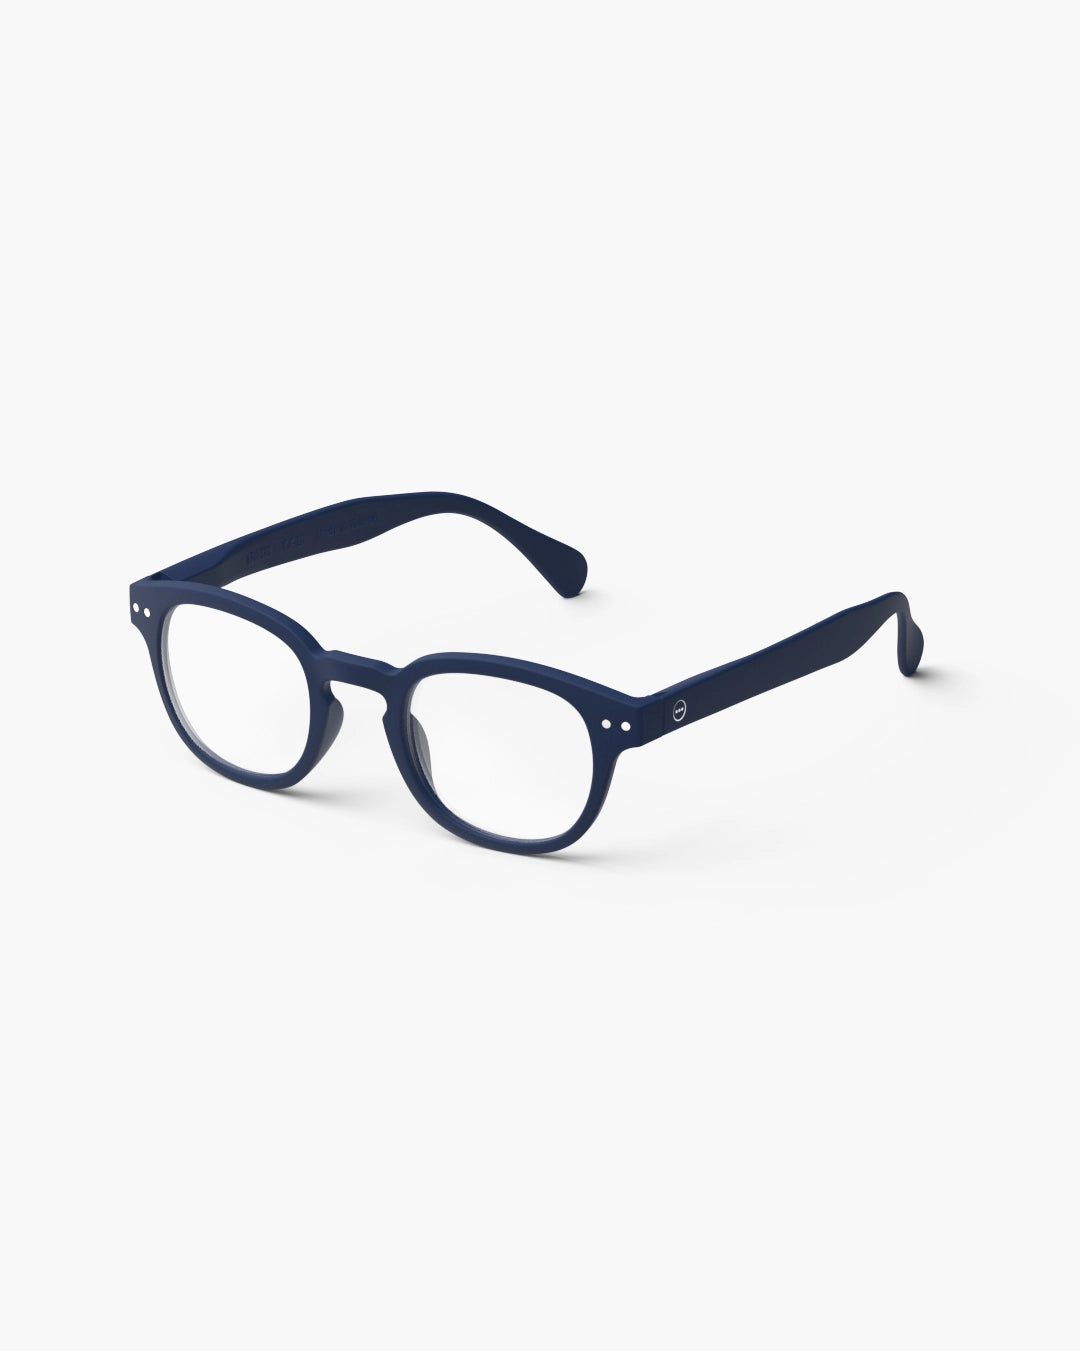 Reading Glasses- #C Navy Blue